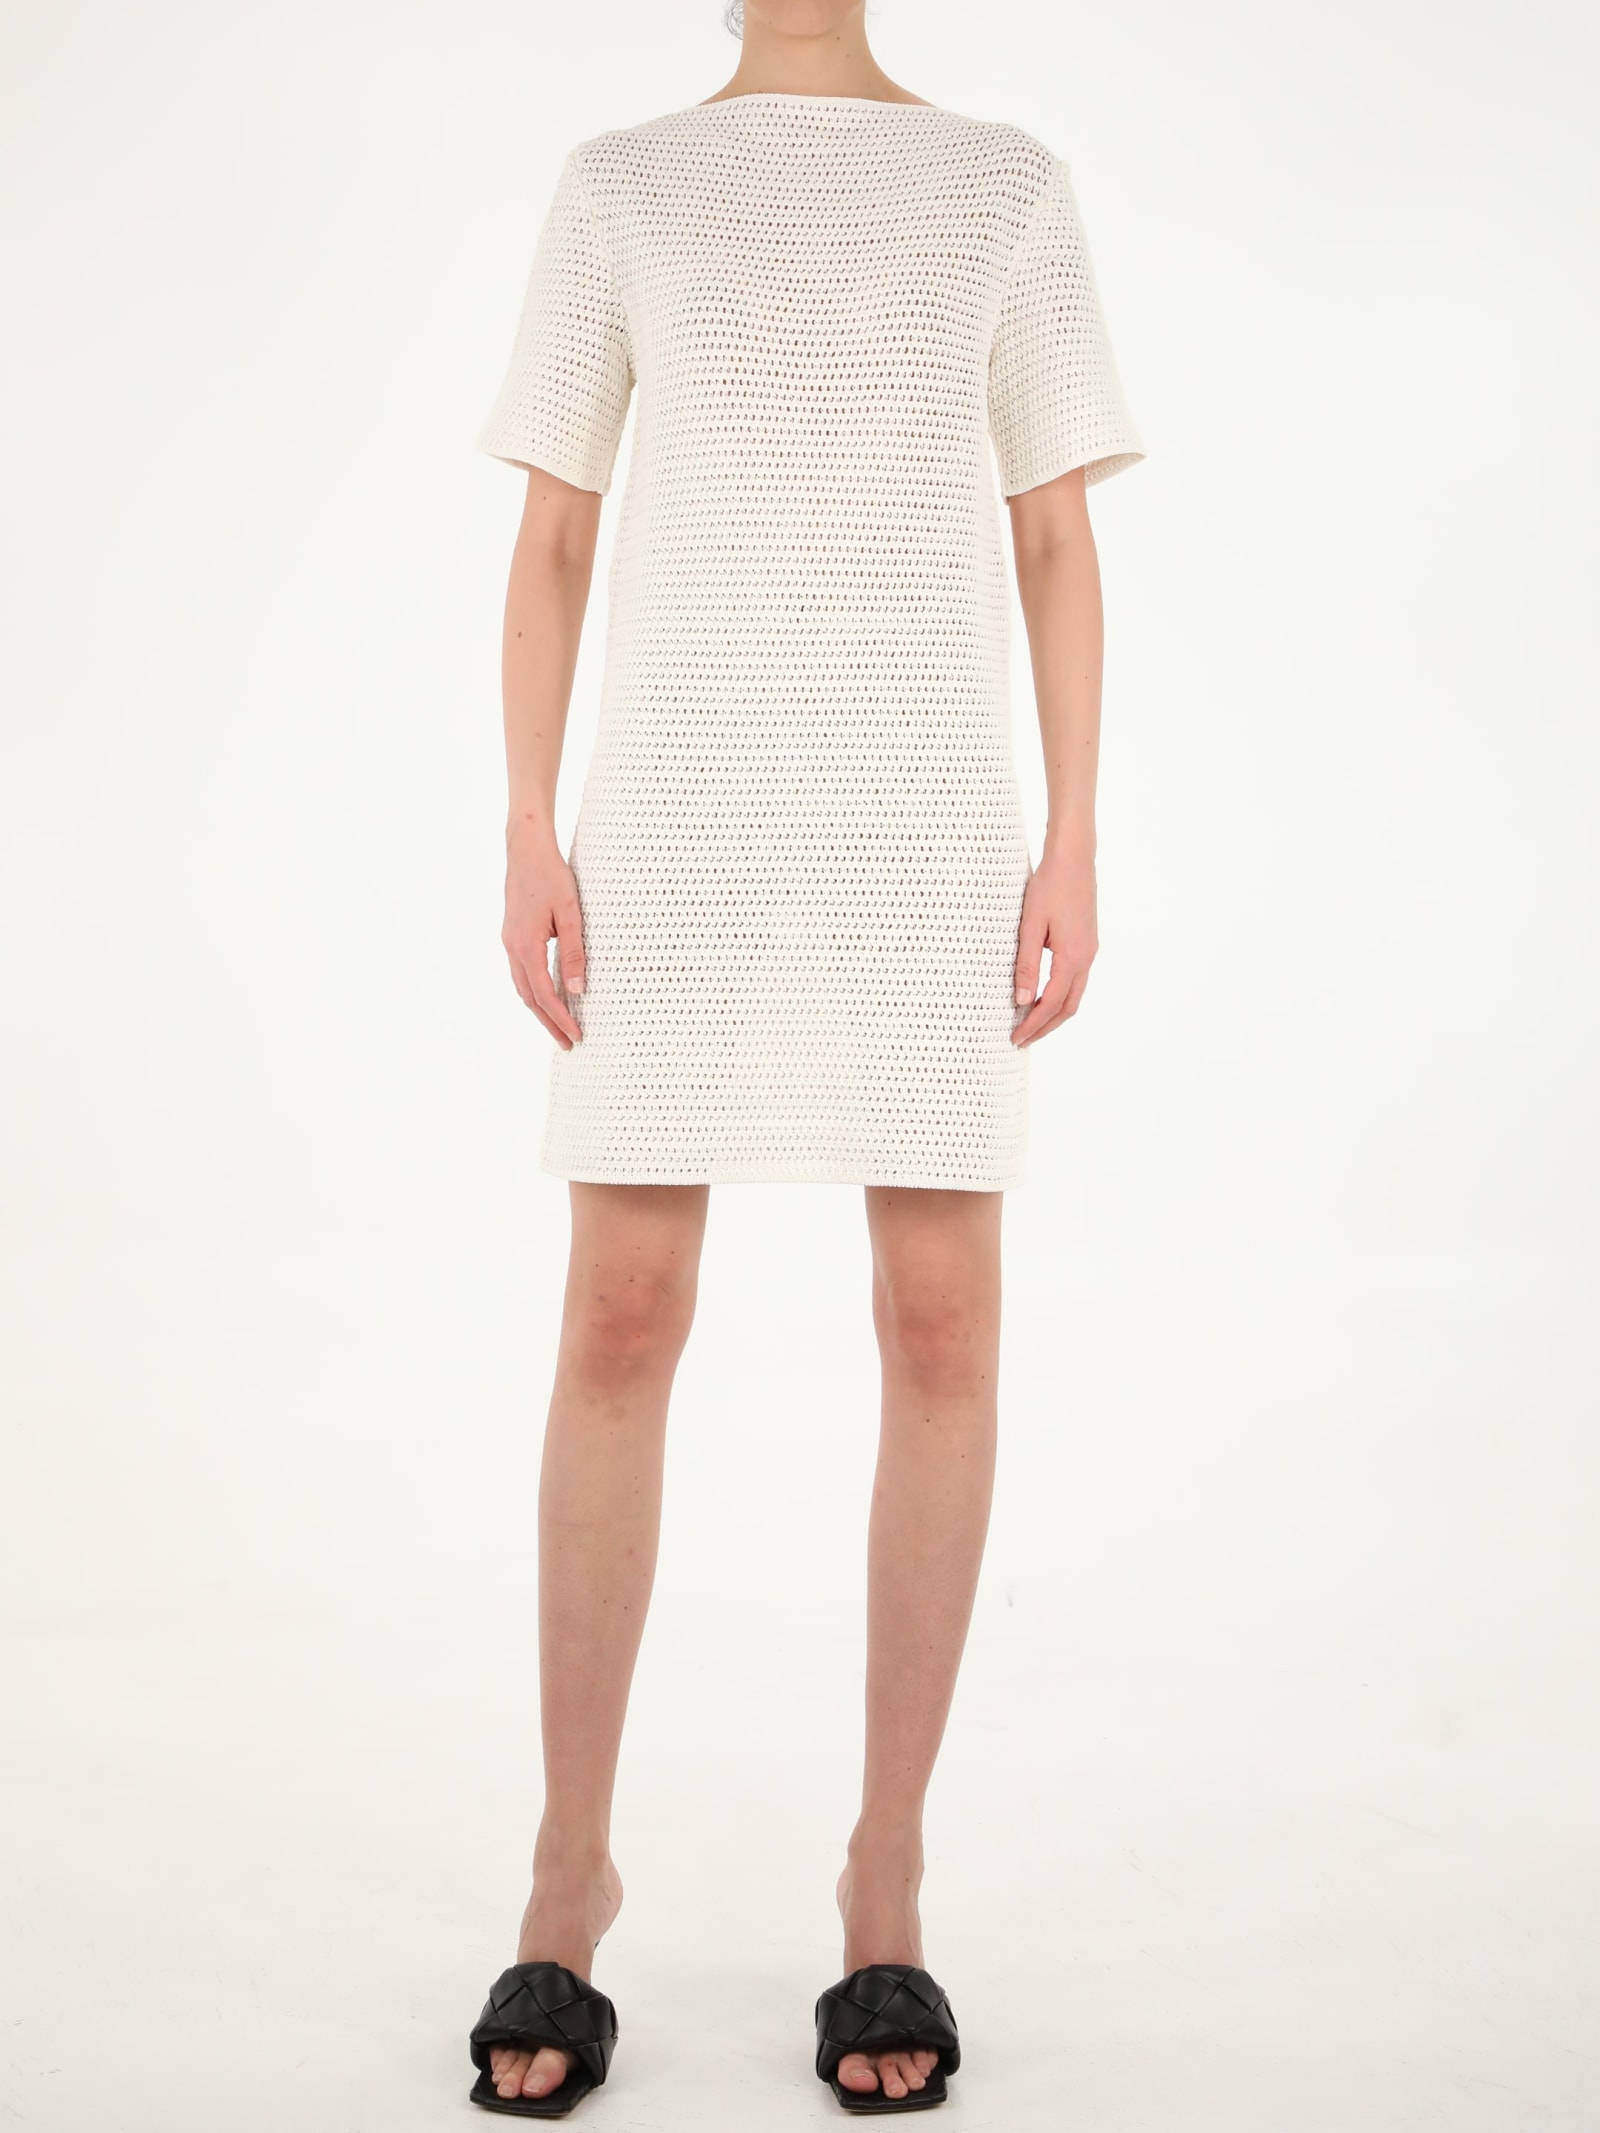 Bottega Veneta Crochet White Dress